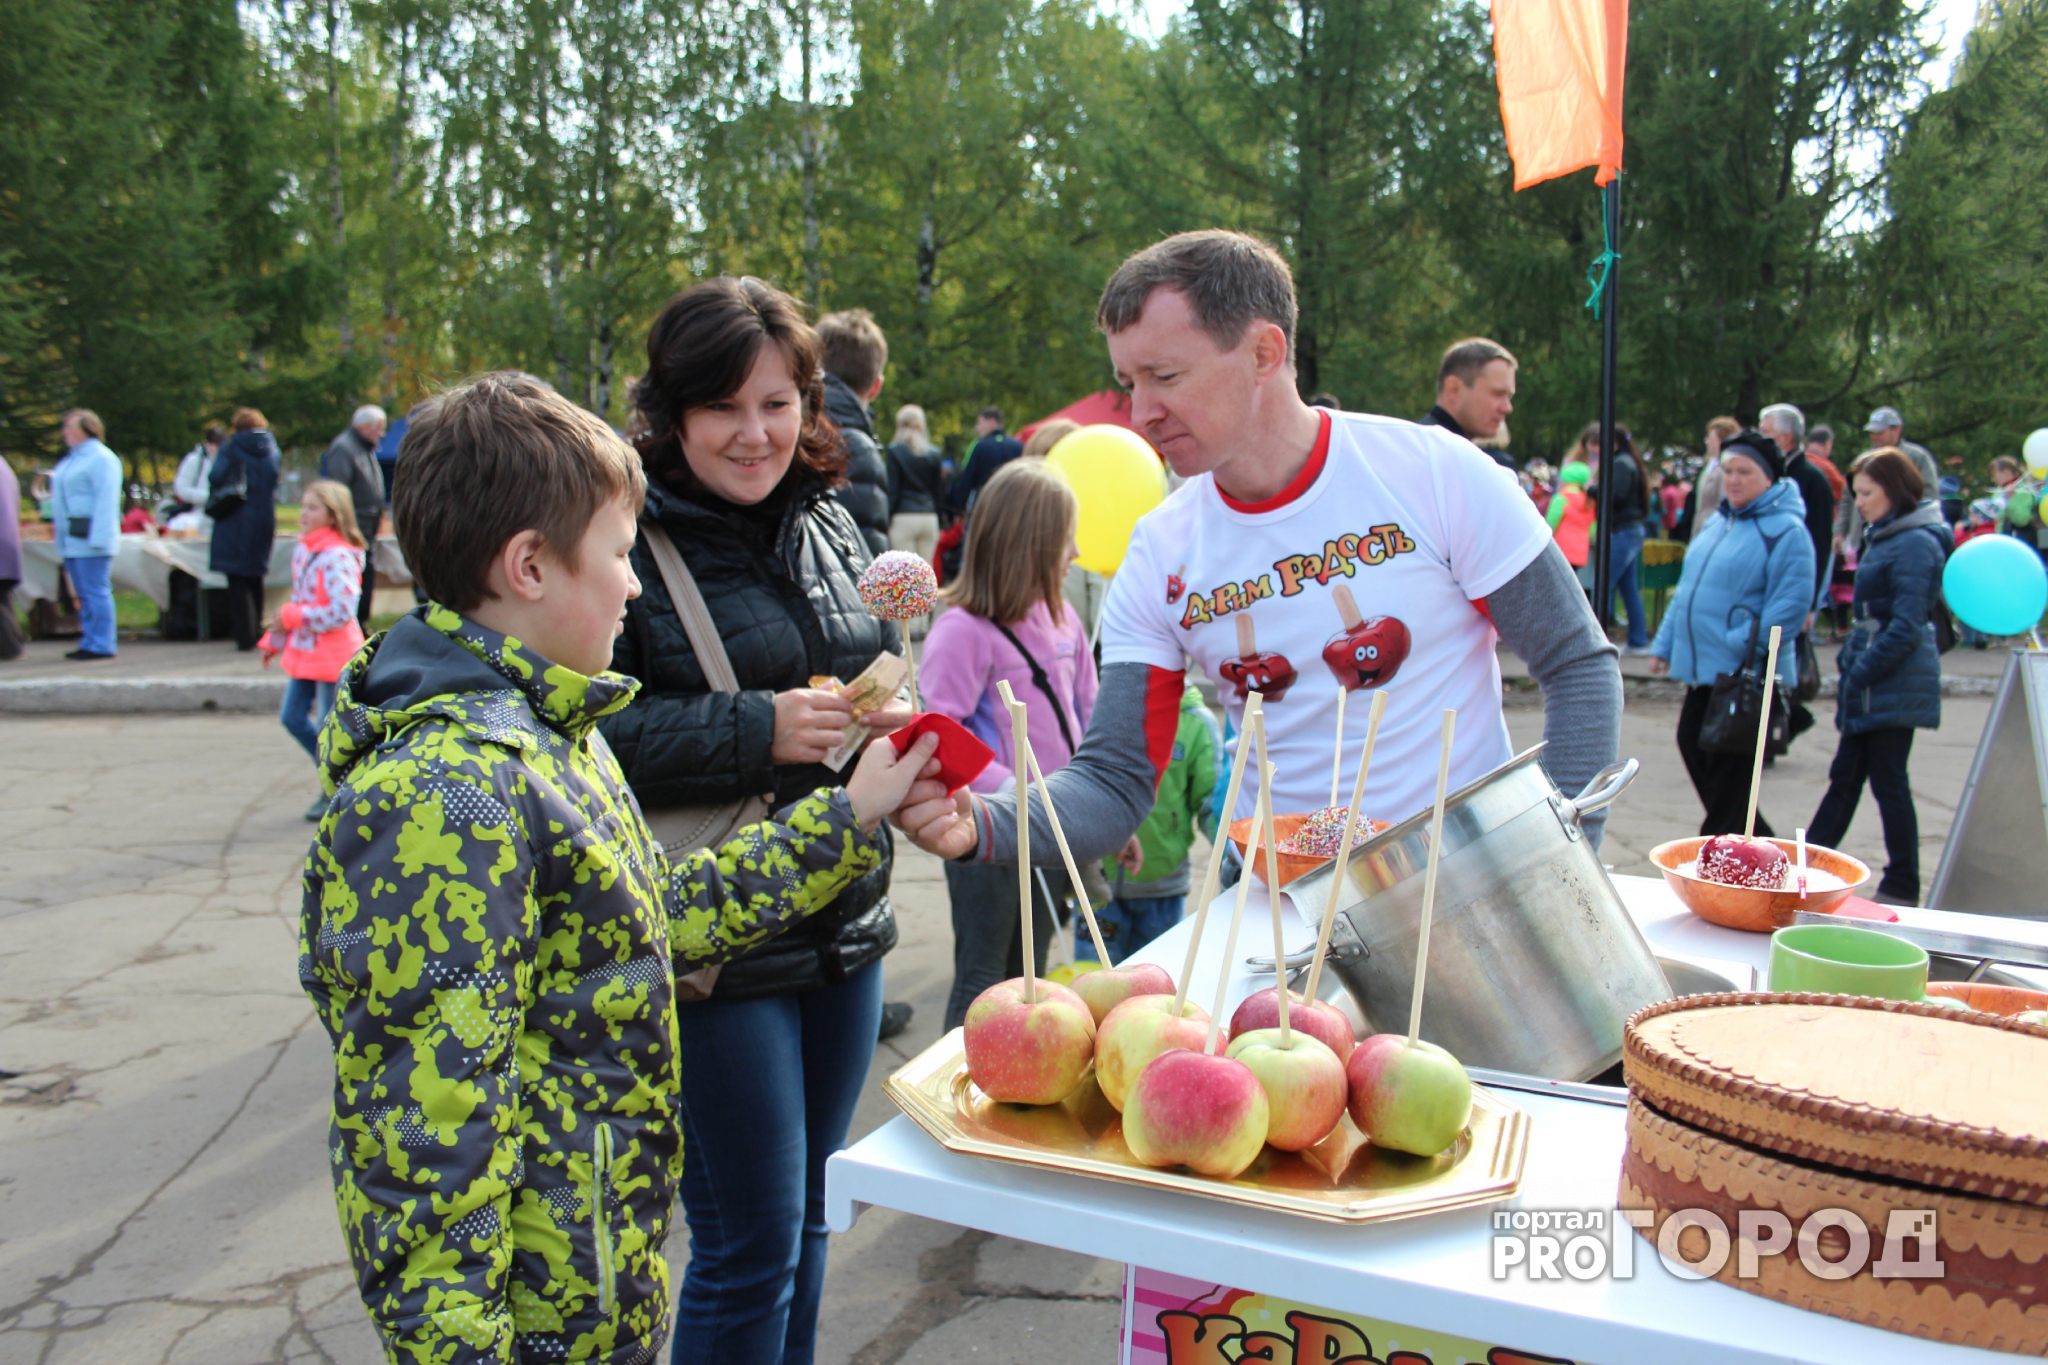 На День города во Владимире пройдет продовольственная выставка-ярмарка